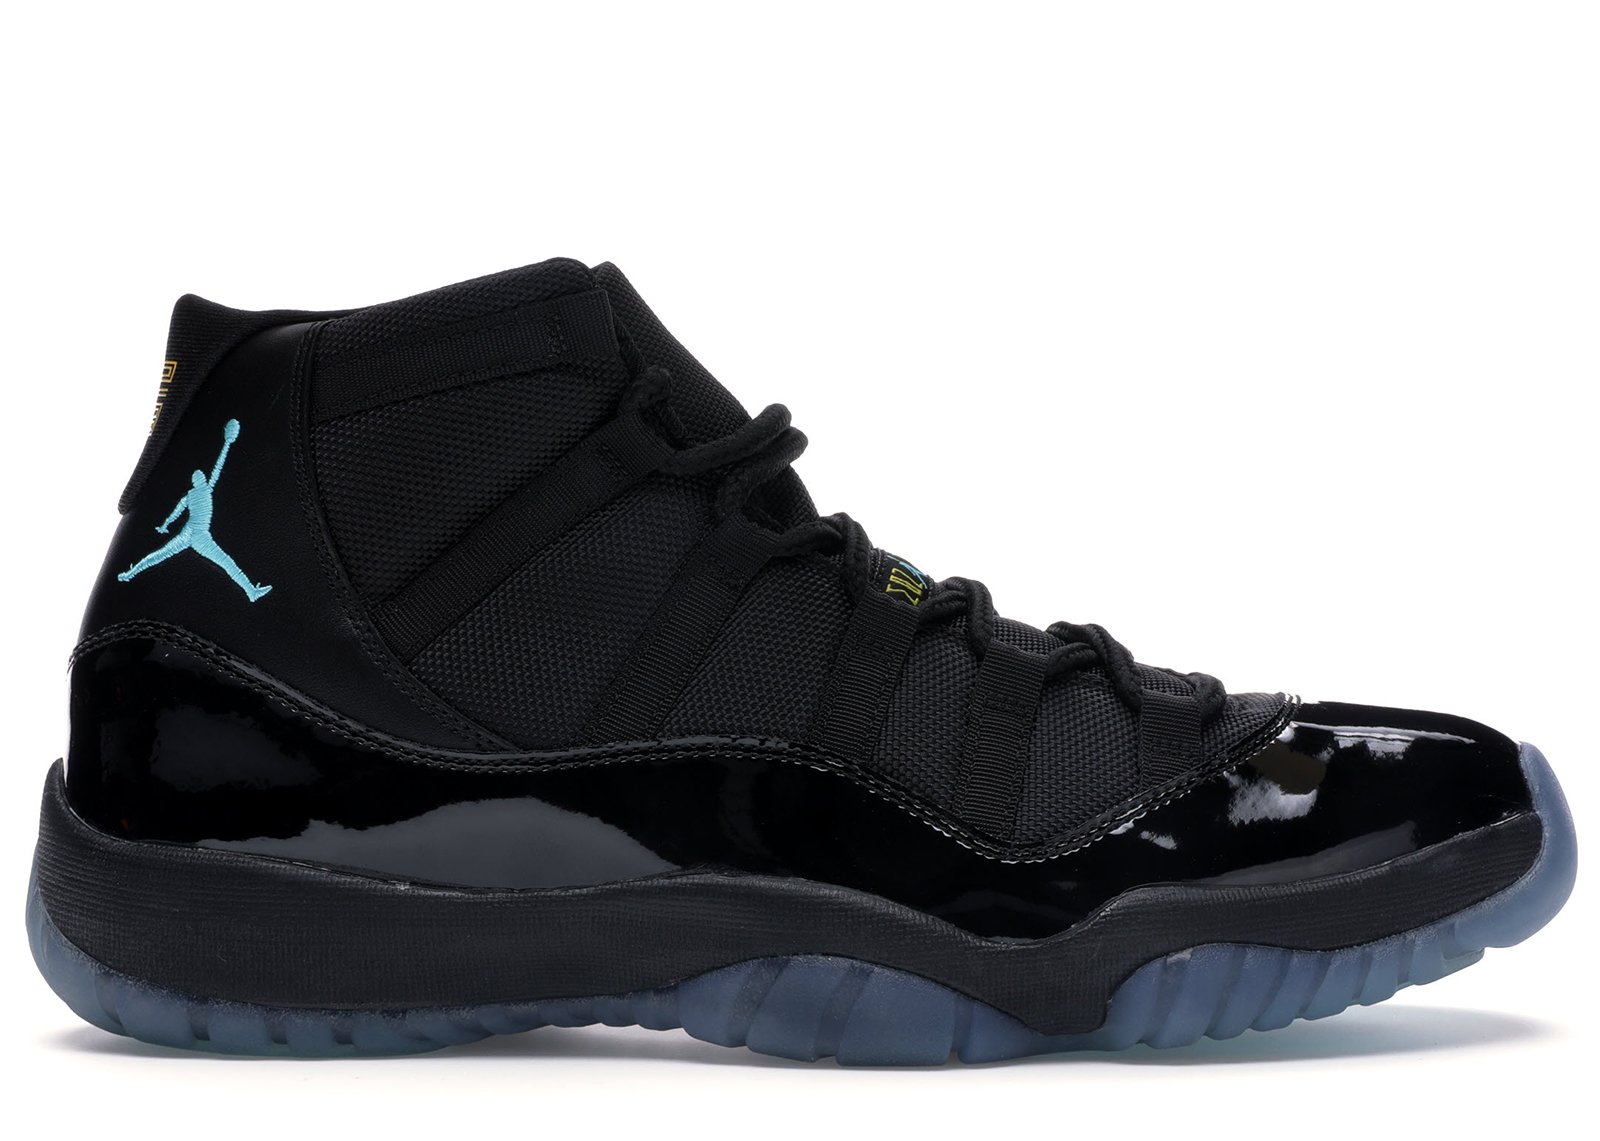 Jordan 11 Retro Gamma Blue sneakers